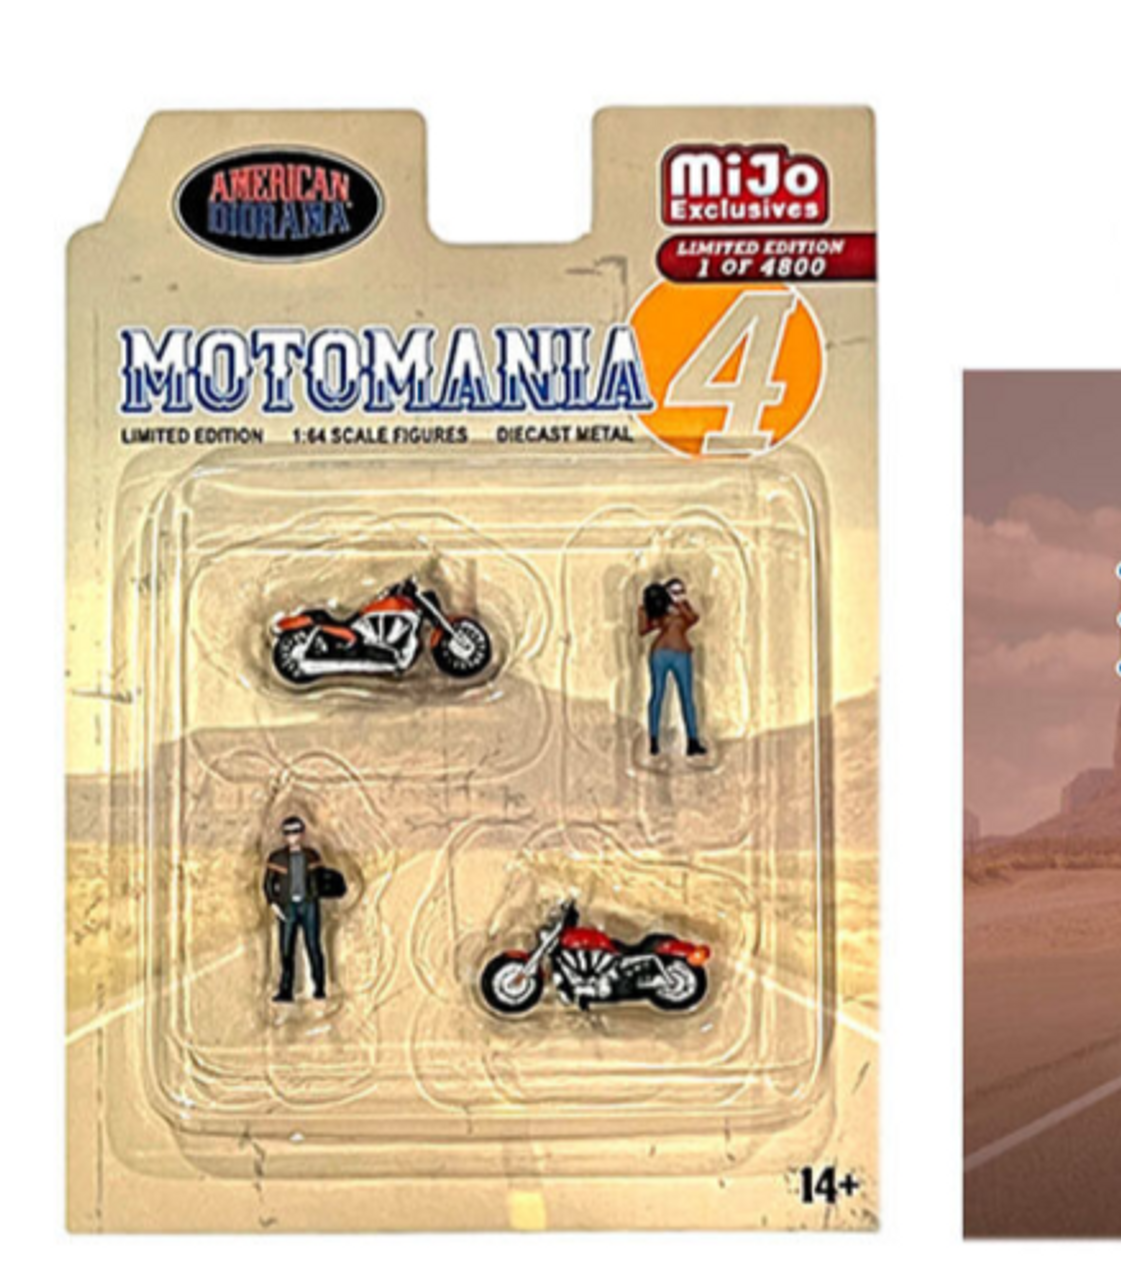 Motomania 3 4 Piece Diecast Figures 1:64 Scale American Diorama